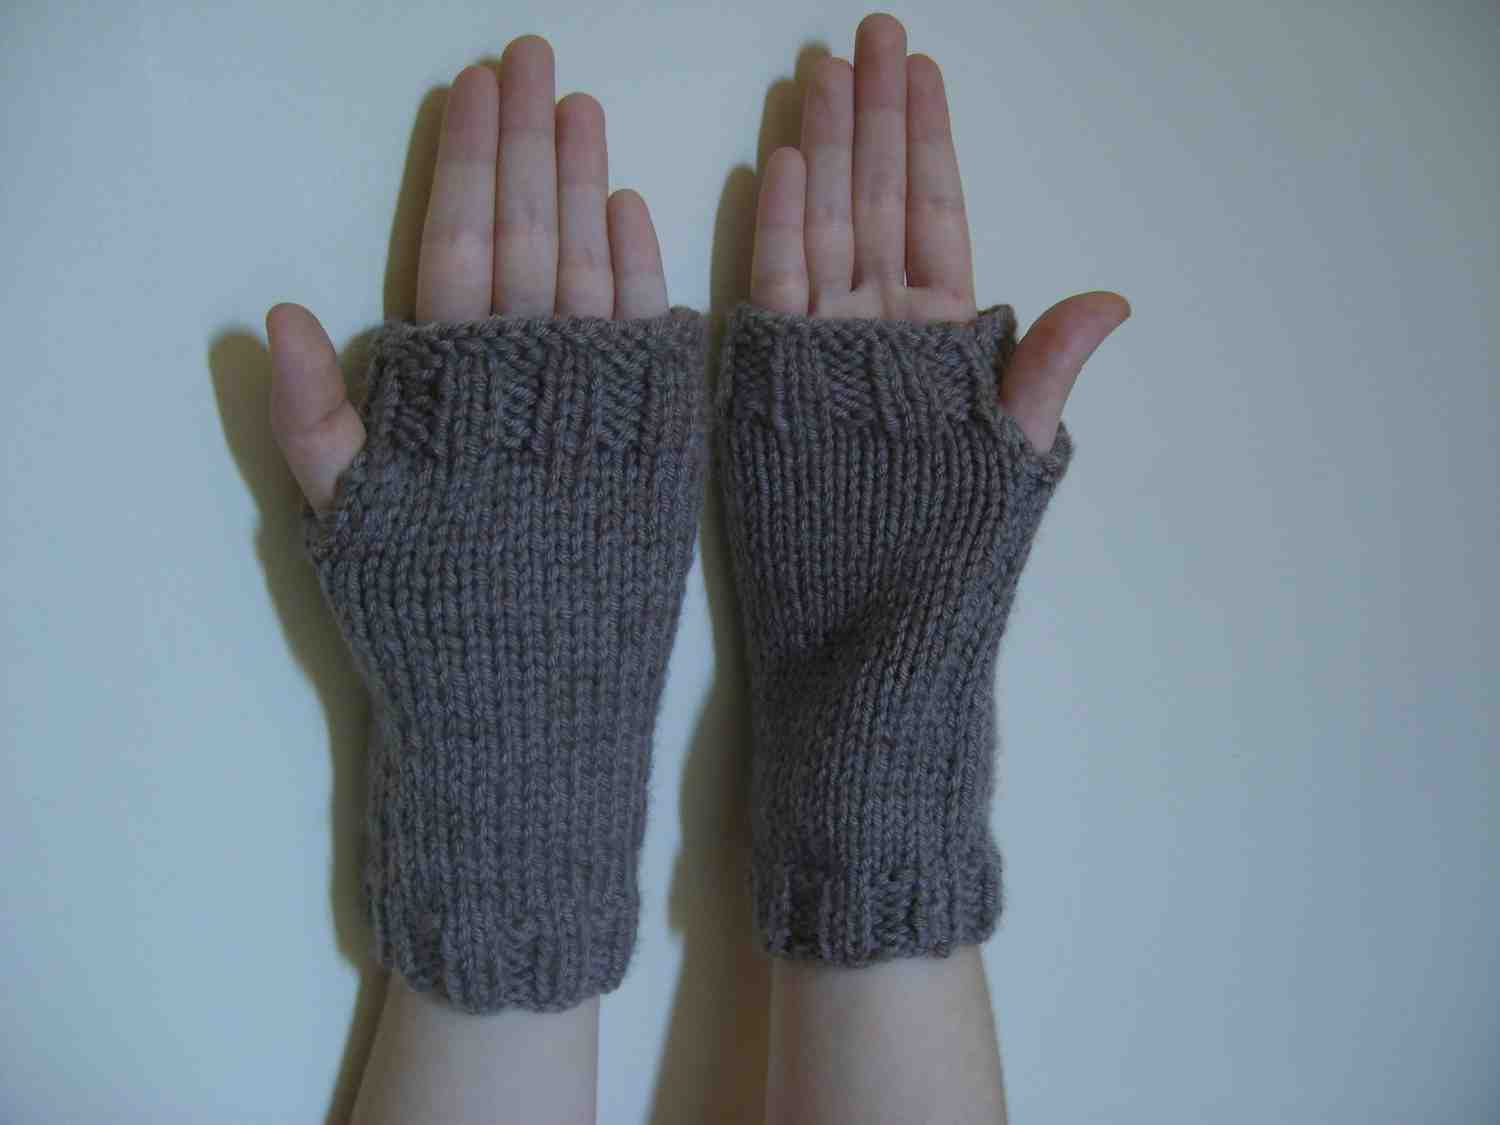 Comment tricoter des mitaines avec une capuche?